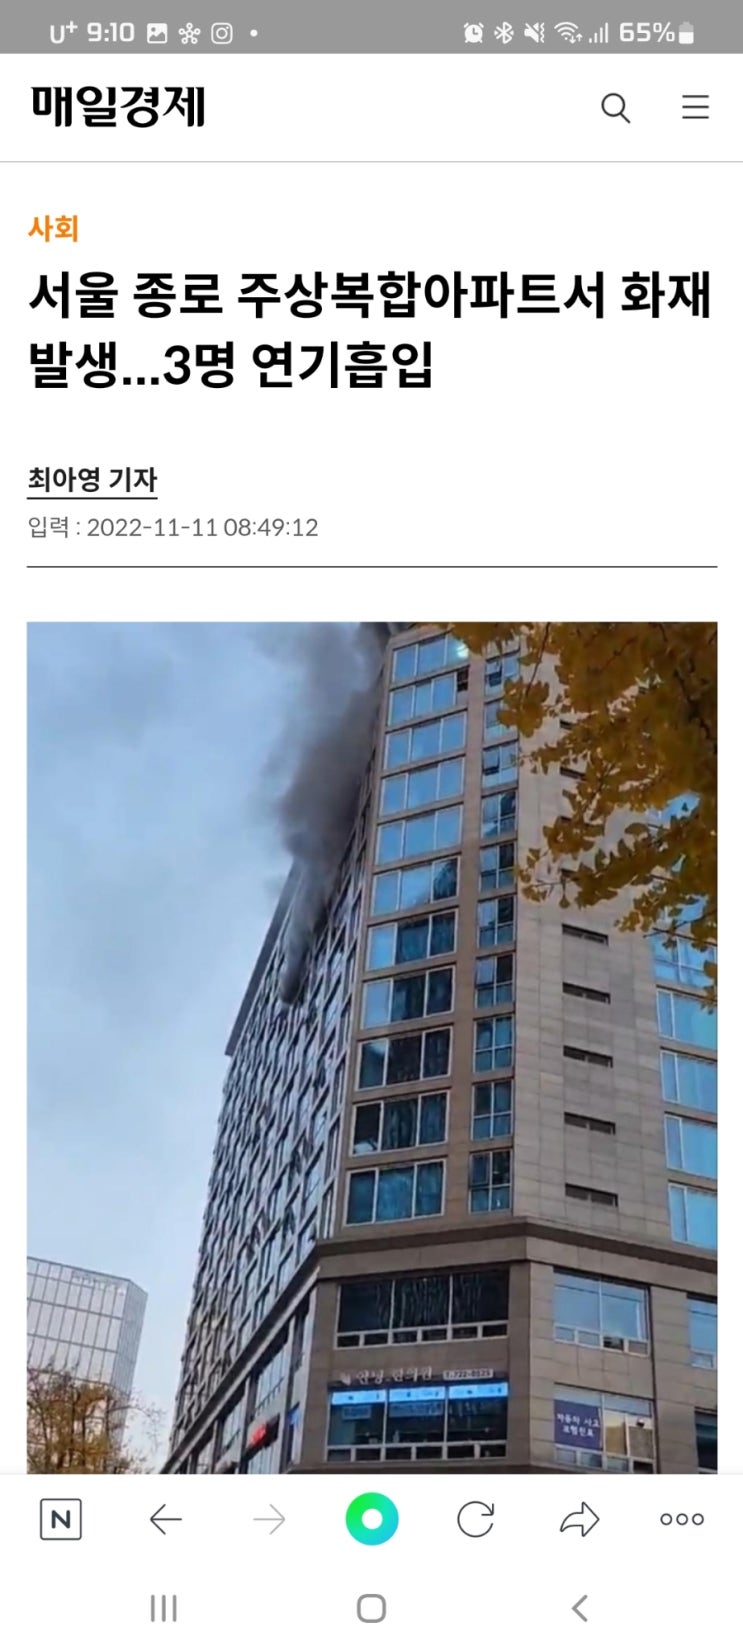 서울 종로 주상복합아파트서 화재 발생...3명 연기흡입